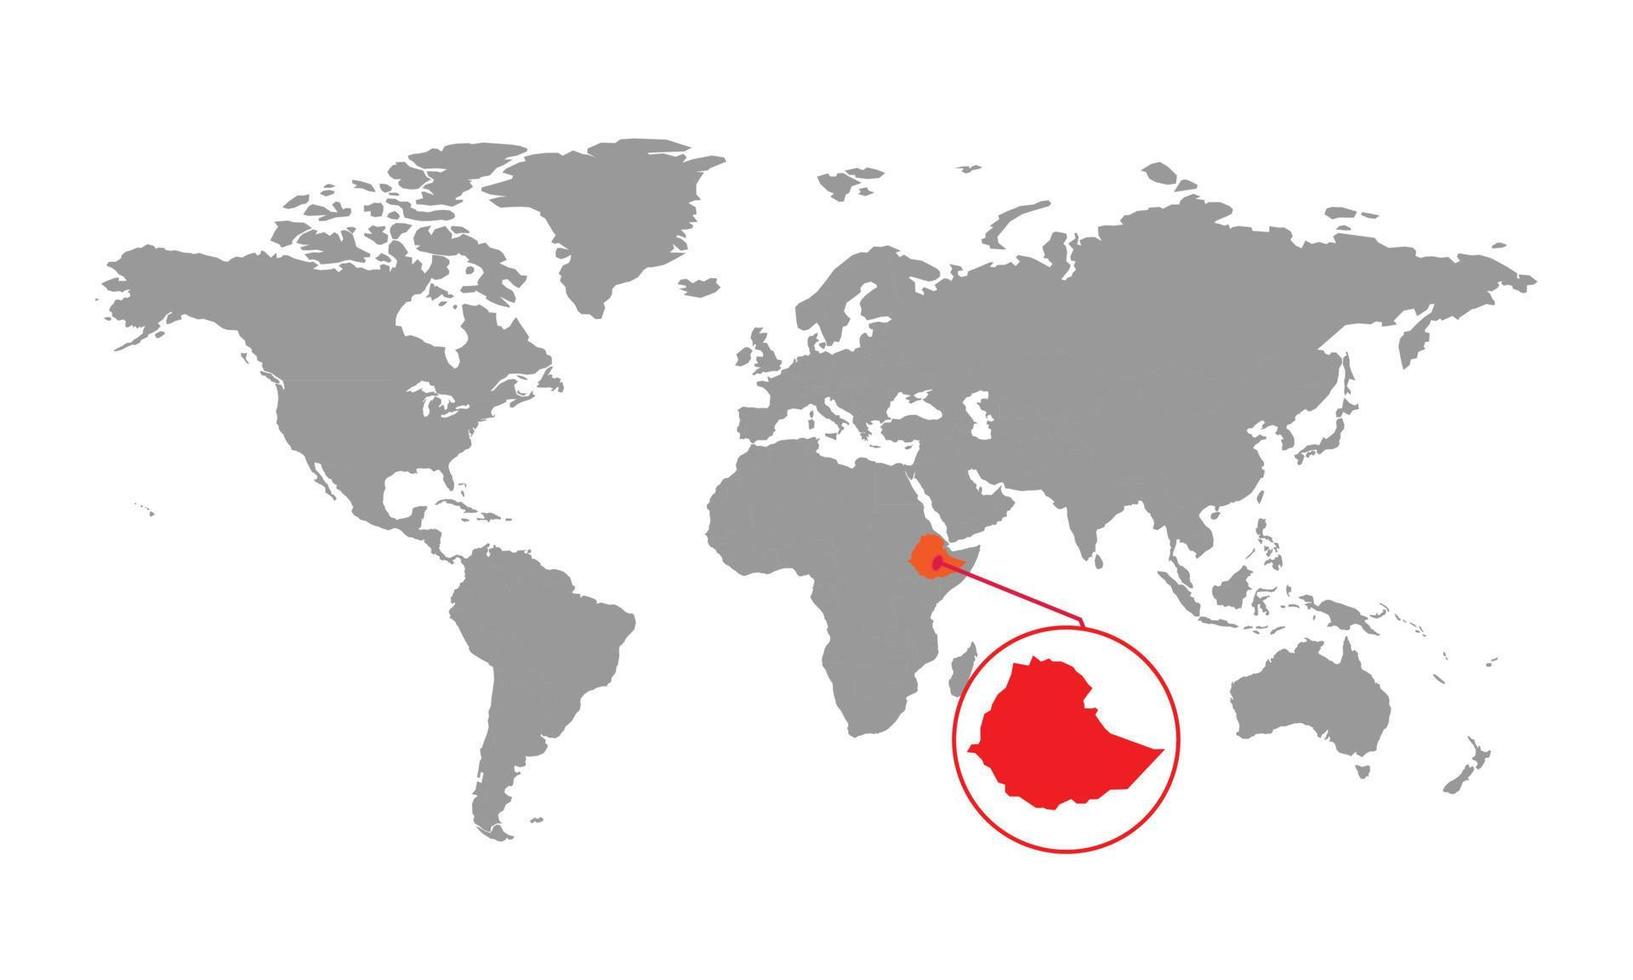 foco do mapa da etiópia. mapa do mundo isolado. isolado no fundo branco. ilustração vetorial. vetor